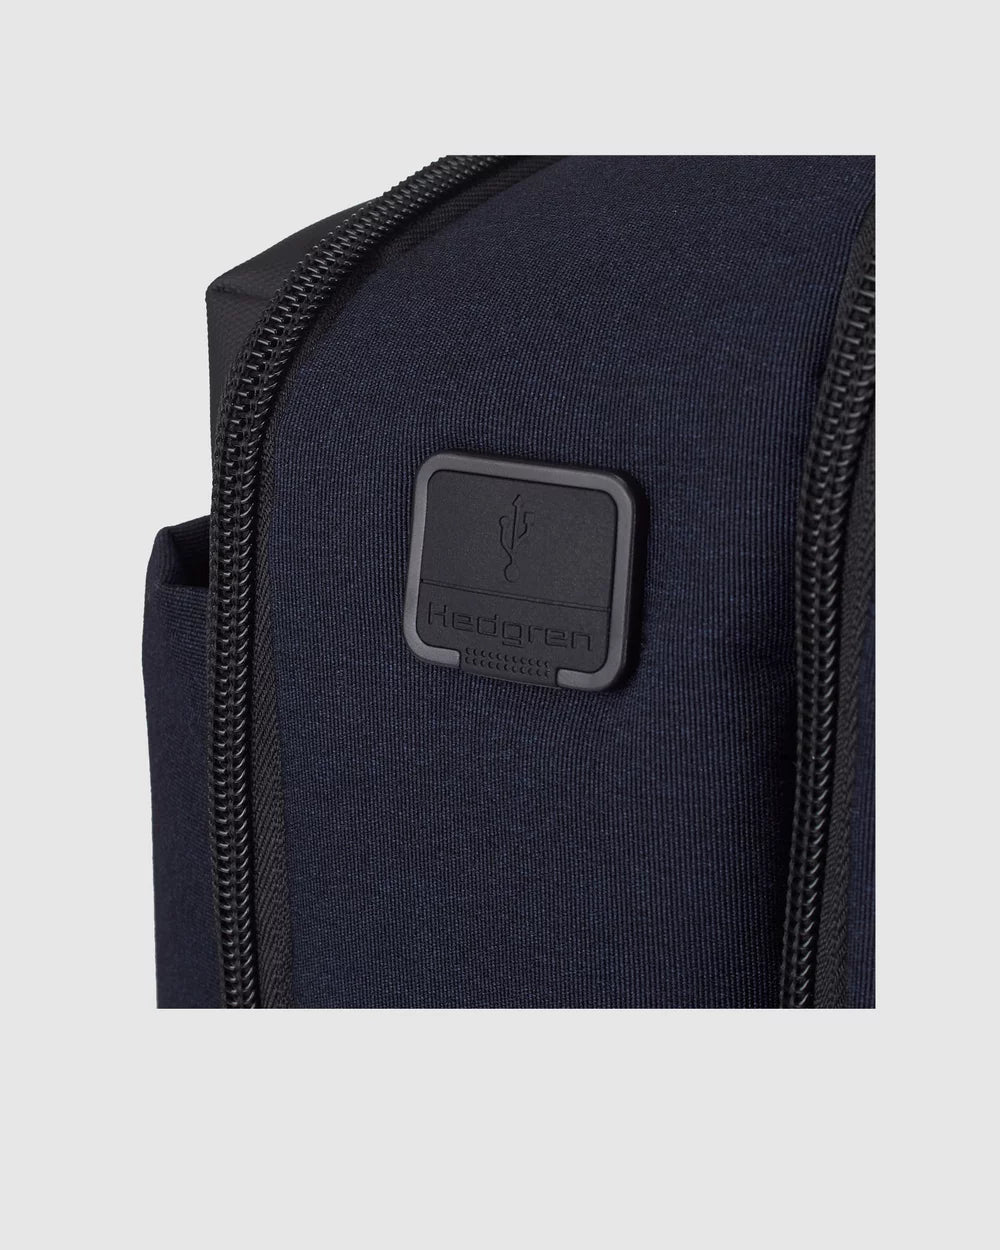 Hedgren Script 2 Comp Backpack 15.6" RFID